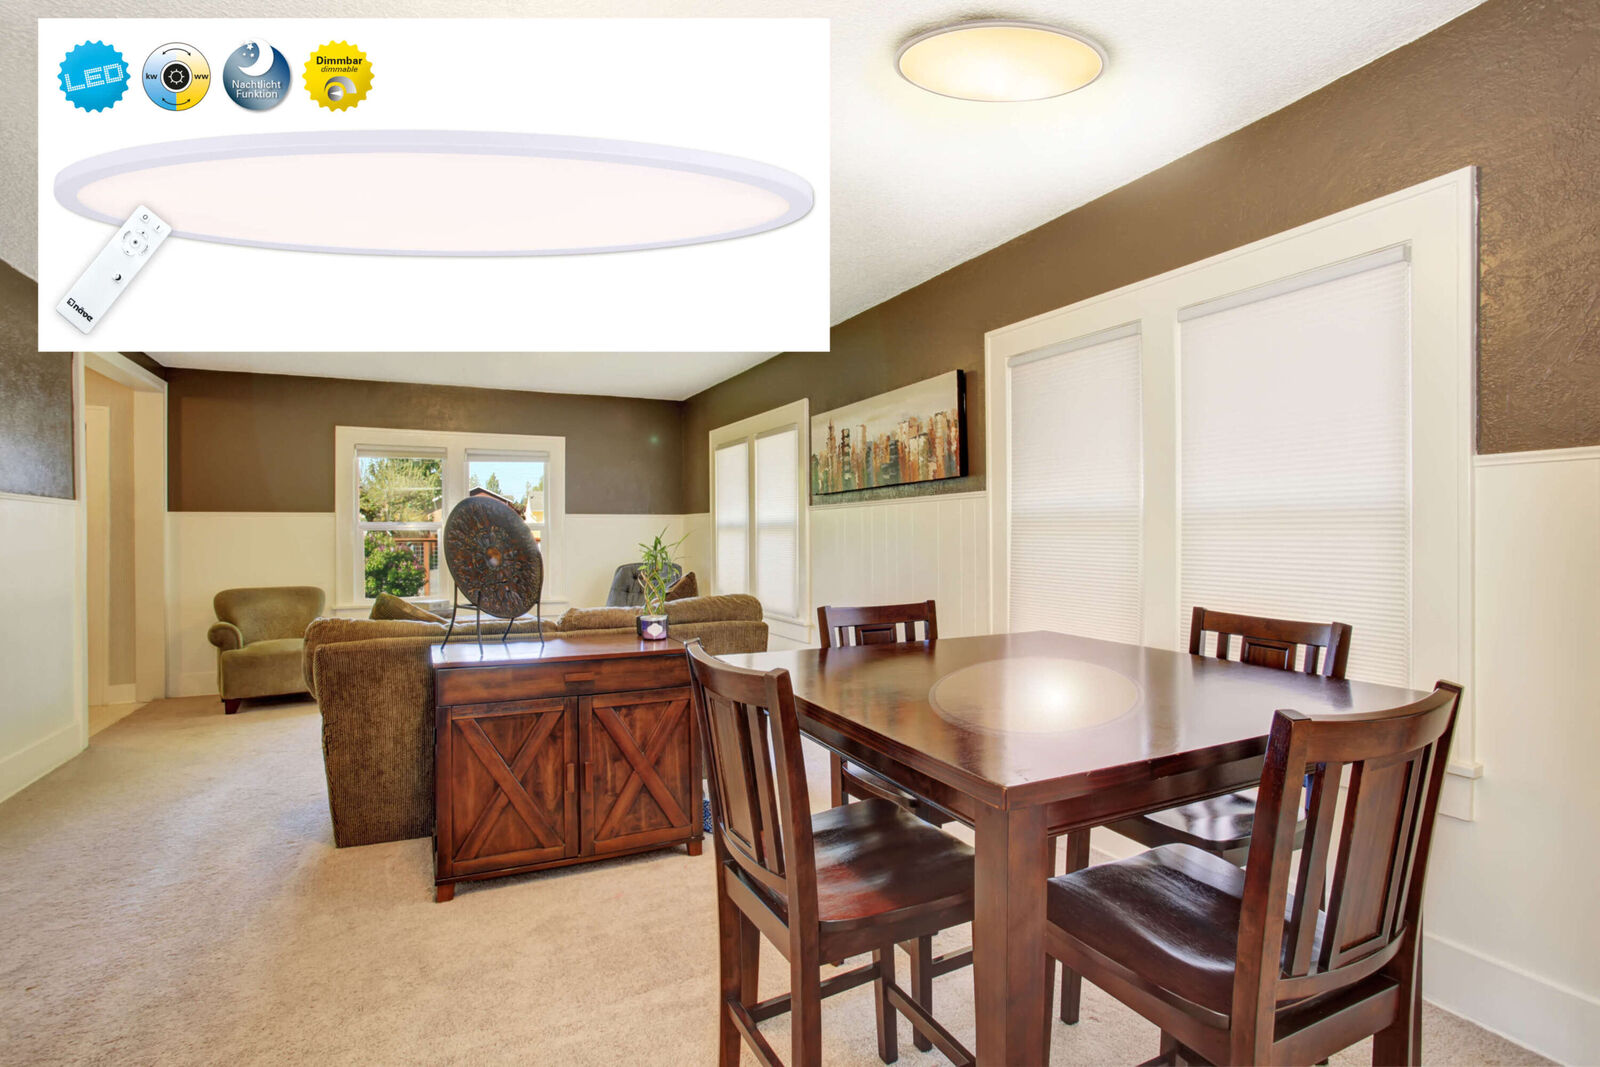 Näve oval LED Deckenleuchte Panel Deckenlampe Spot Lampe leuchte 1295223  online kaufen | eBay